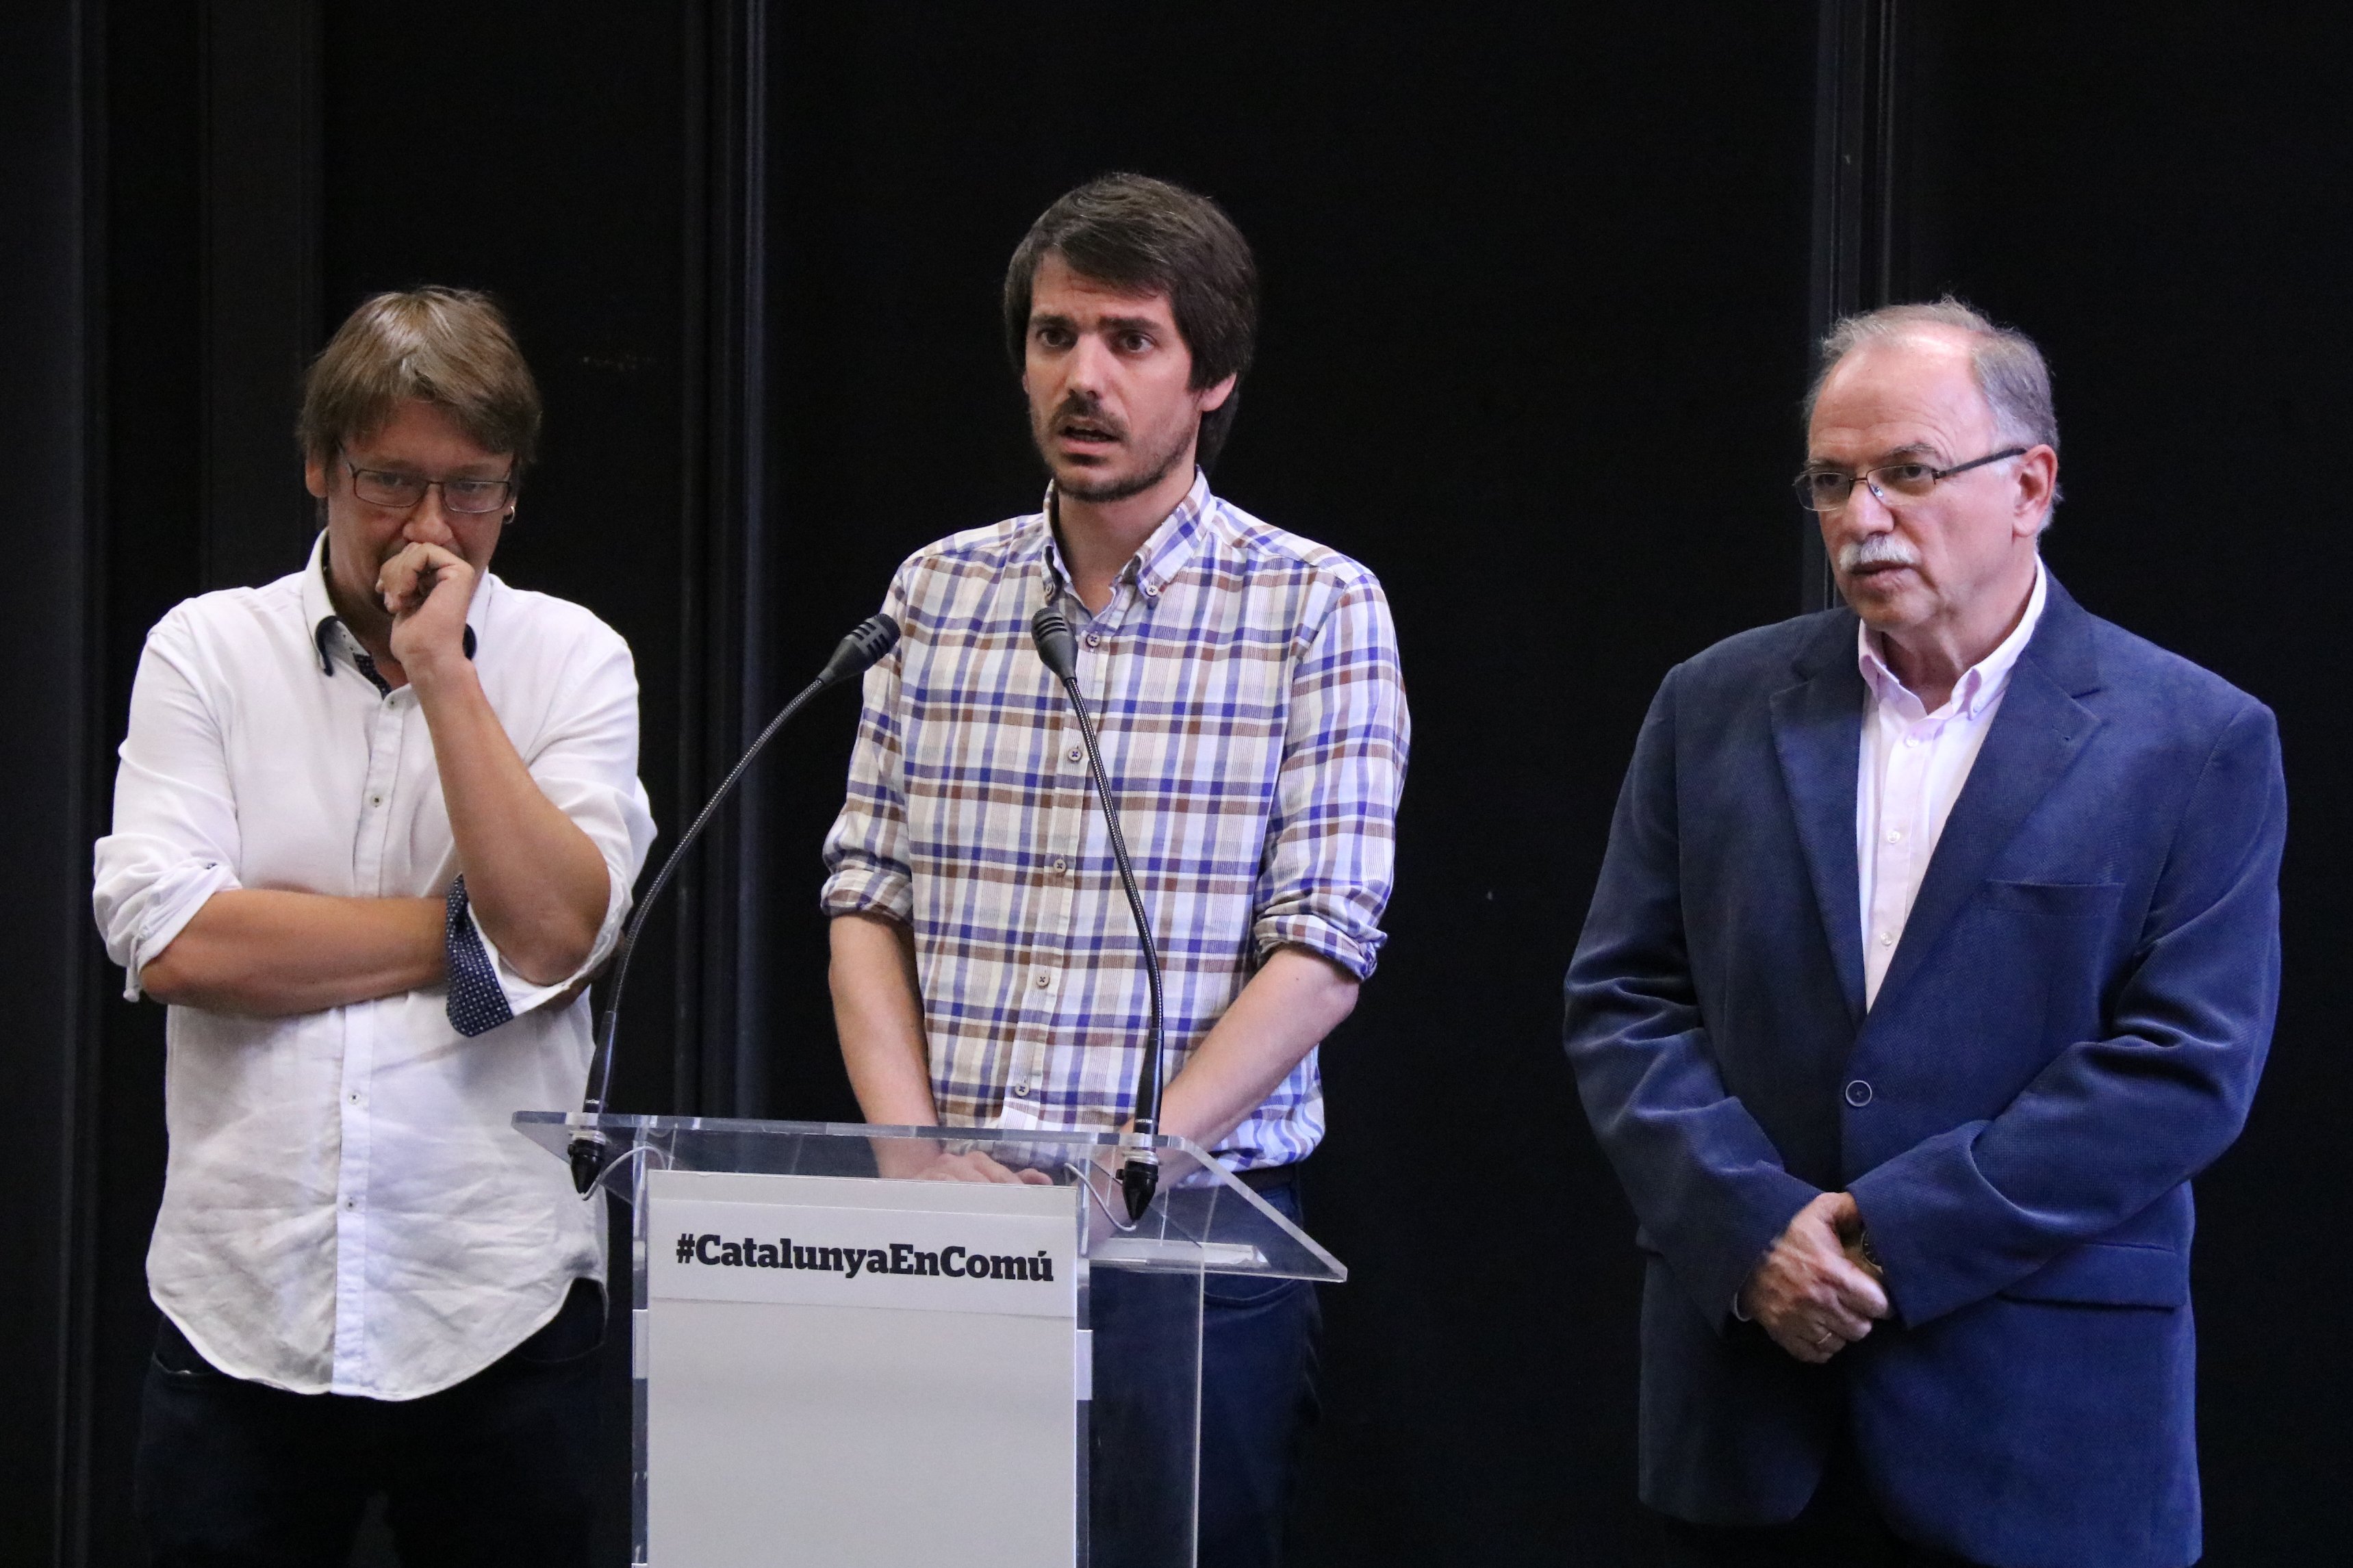 Los comuns avalan los "desafíos democráticos" como respuesta al Gobierno español